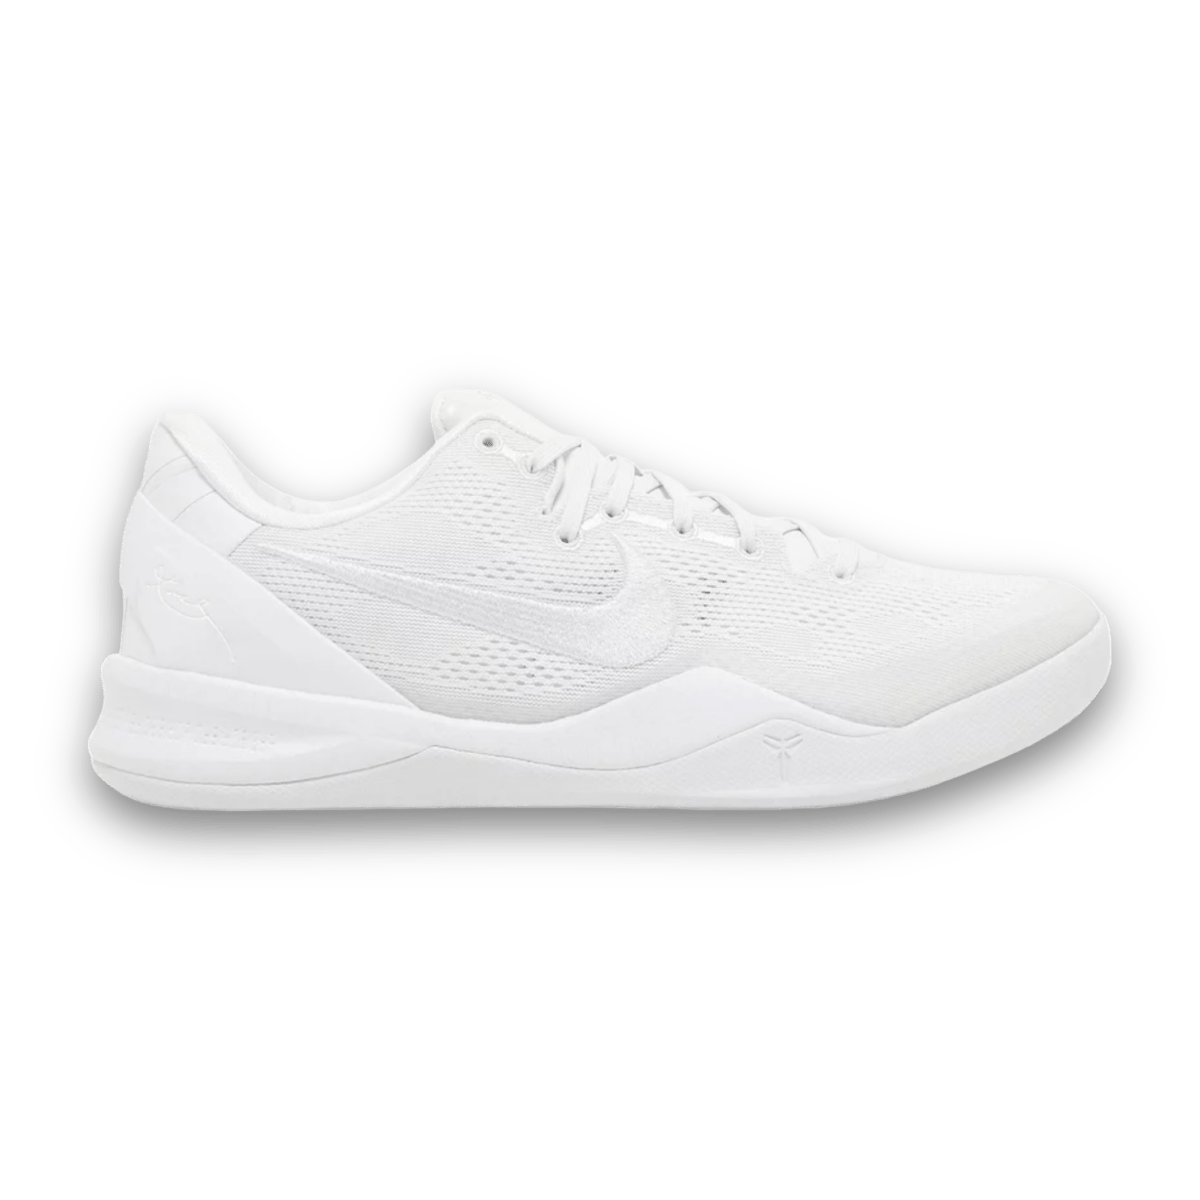 Kobe 8 Protro 'Halo' White - Pre School - Low Sneaker - Jawns on Fire Sneakers & Streetwear